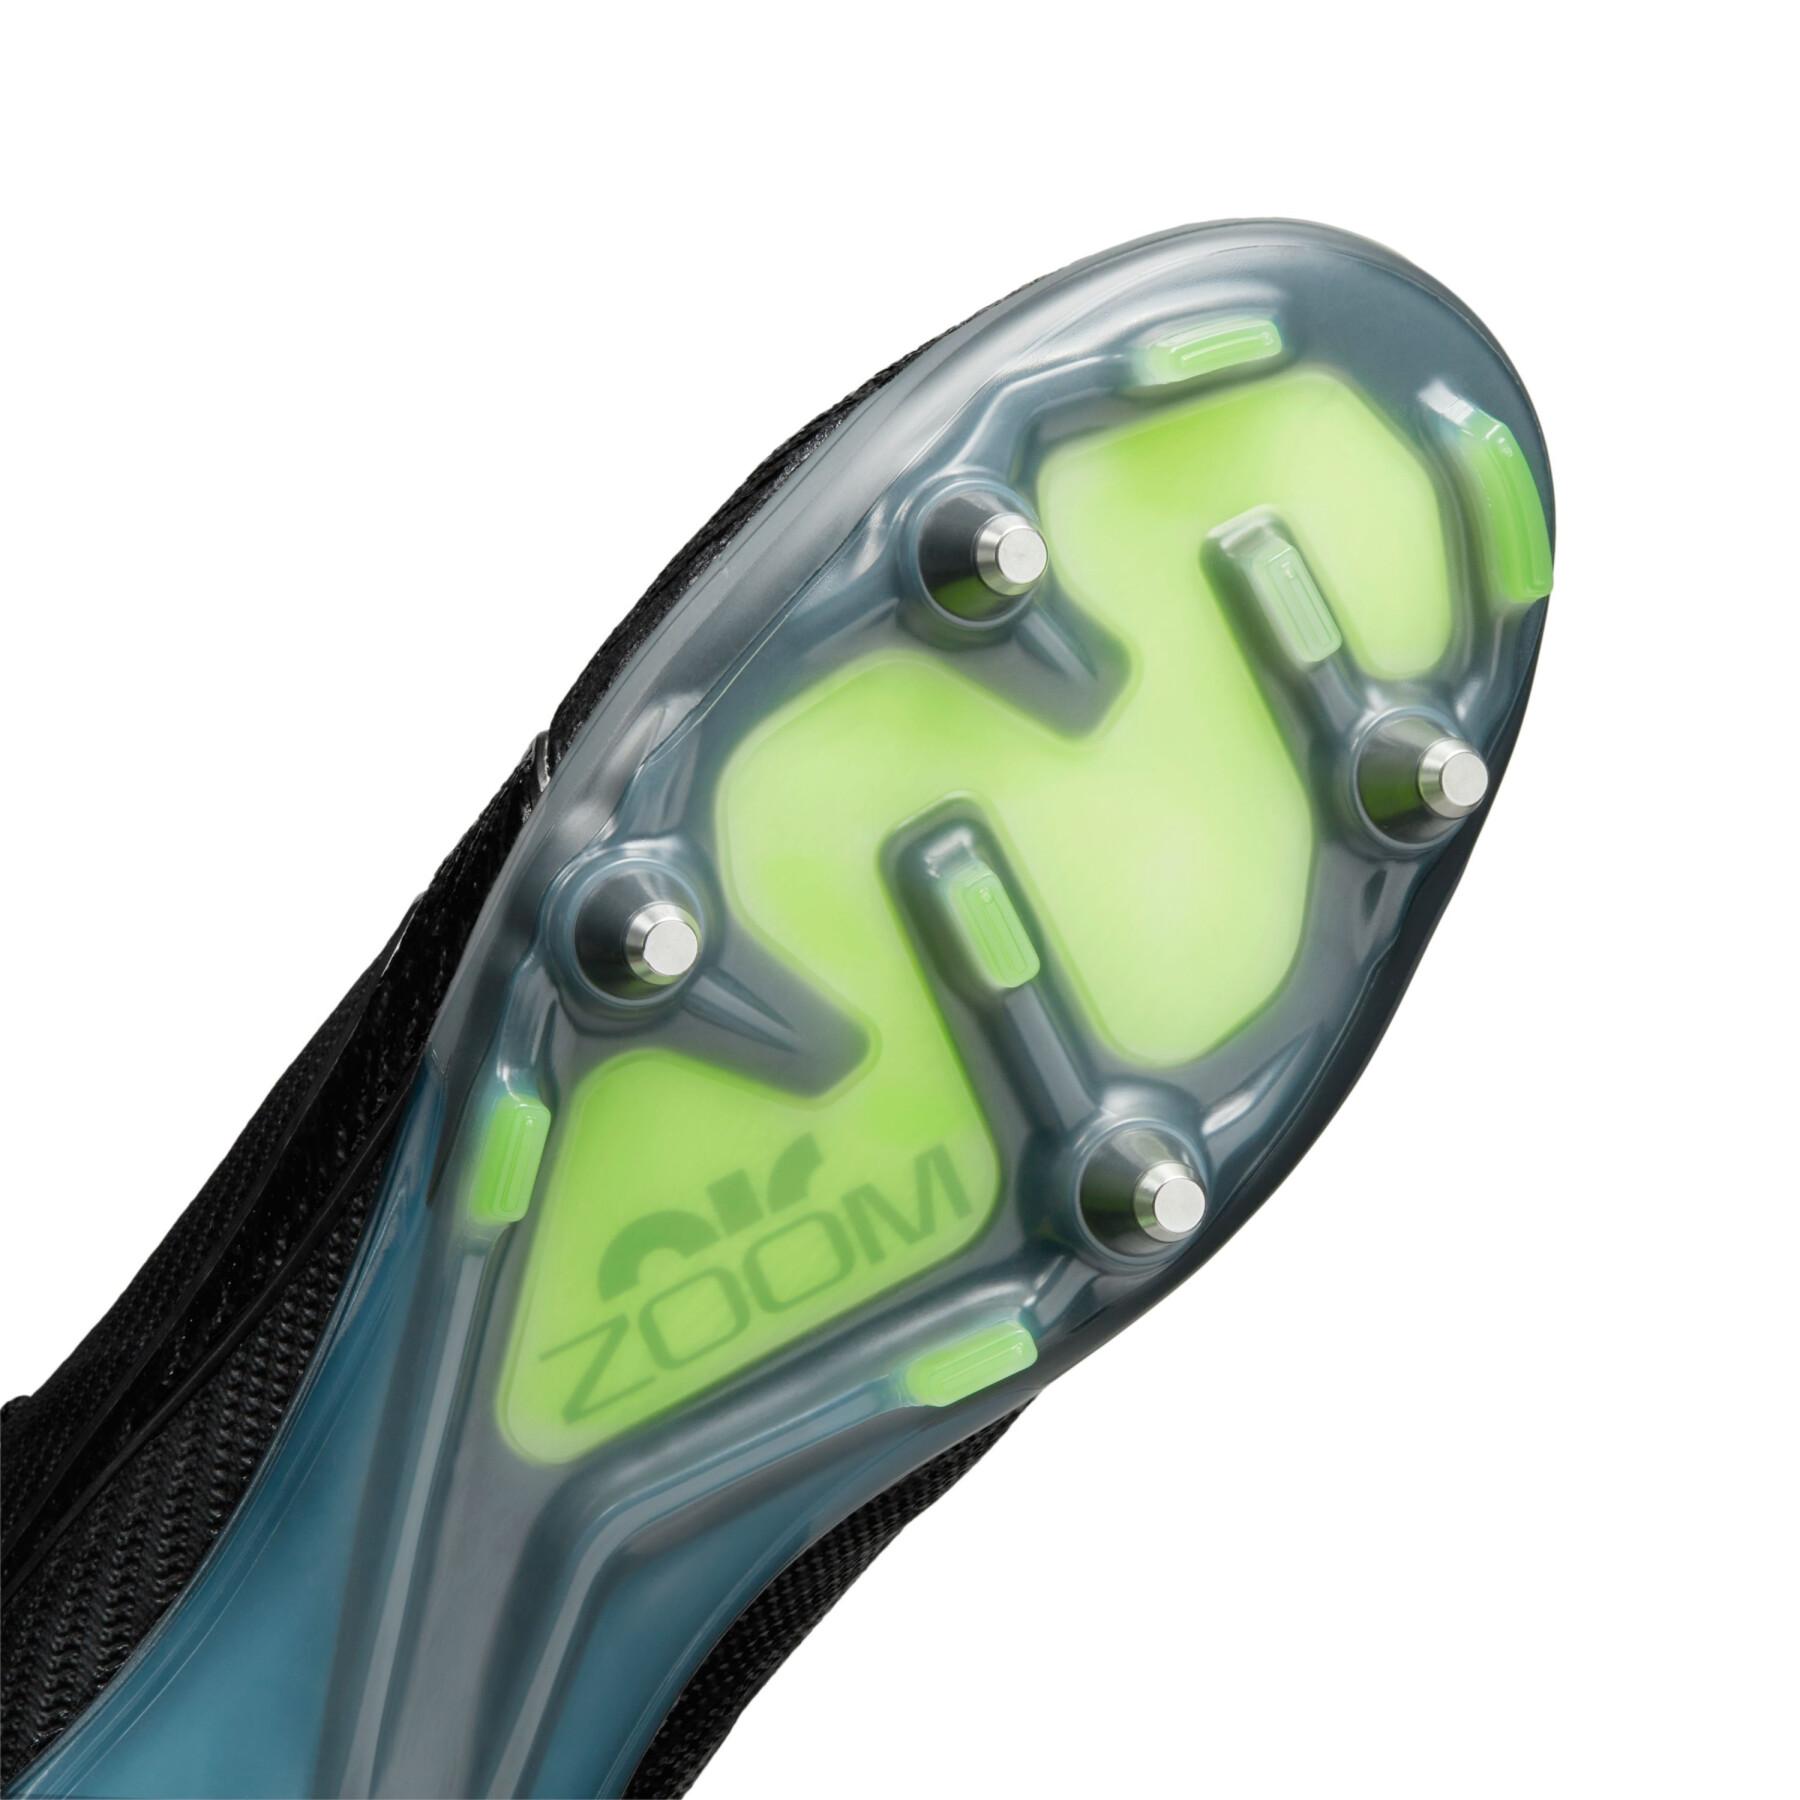 Botas de fútbol Nike Zoom Mercurial Superfly 9 Elite SG-Pro - Shadow Black Pack